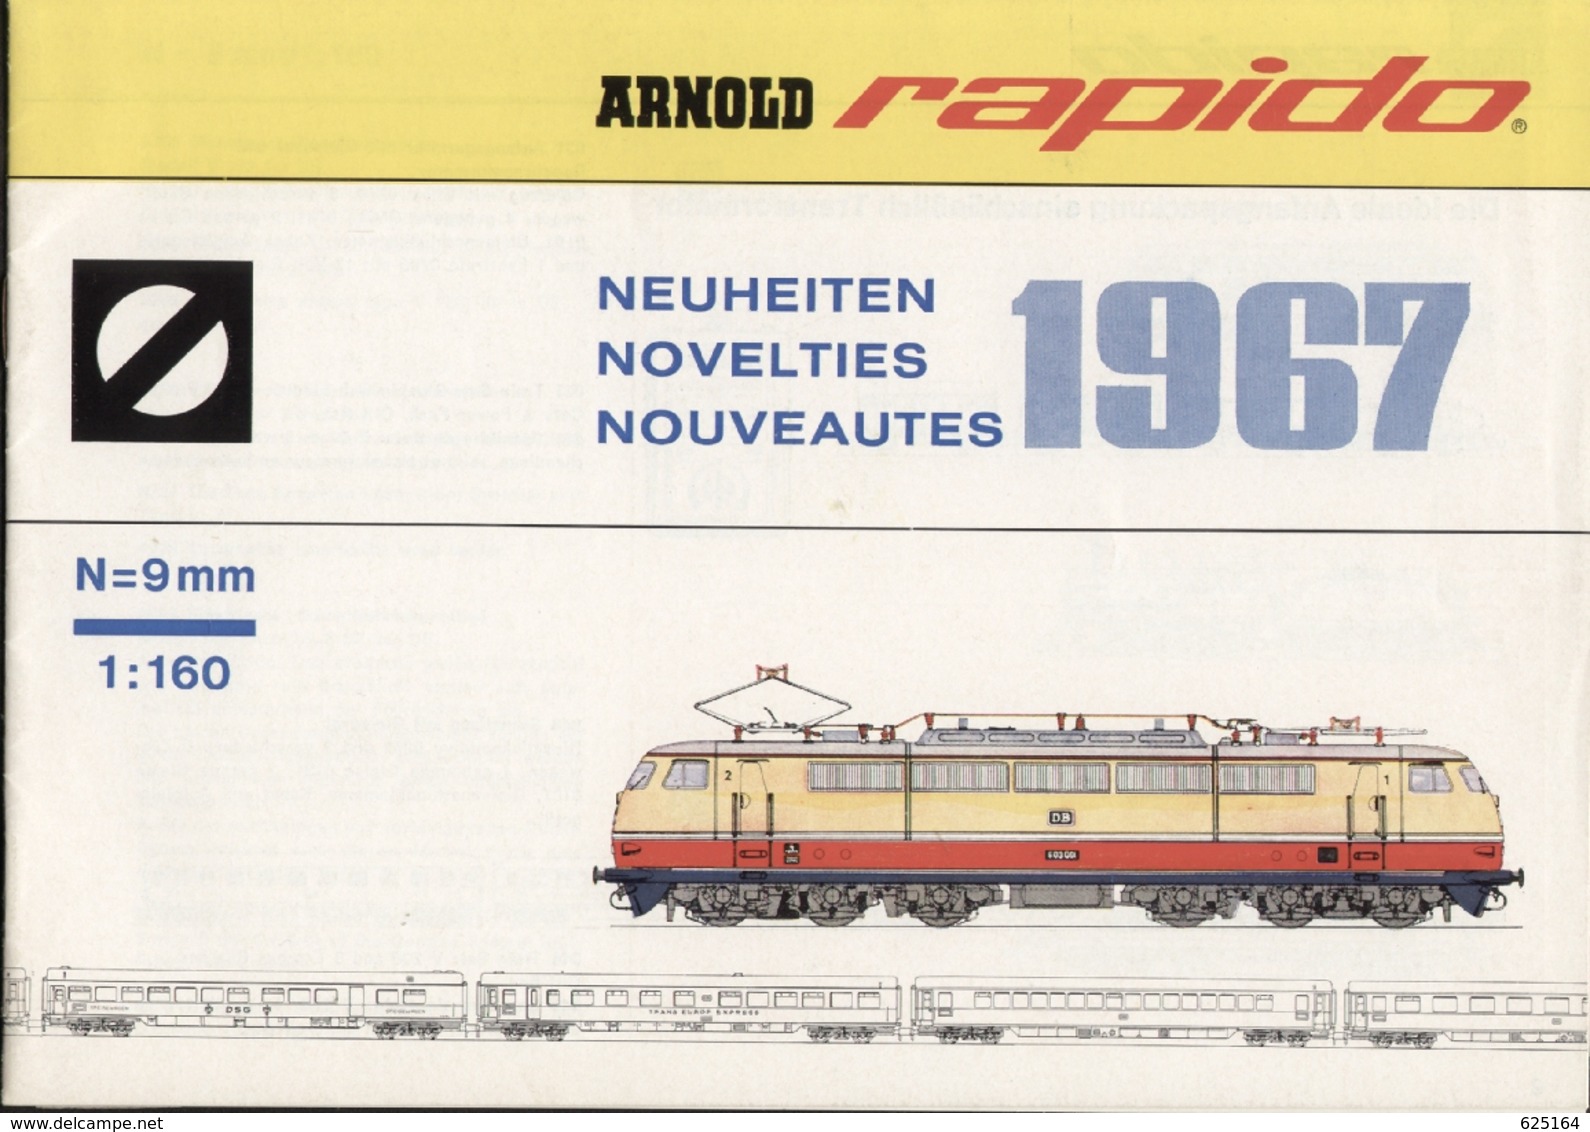 Catalogue ARNOLD RAPIDO Neuheiten 1967 N 9 Mm 1/160 + Preisliste DM - Allemand